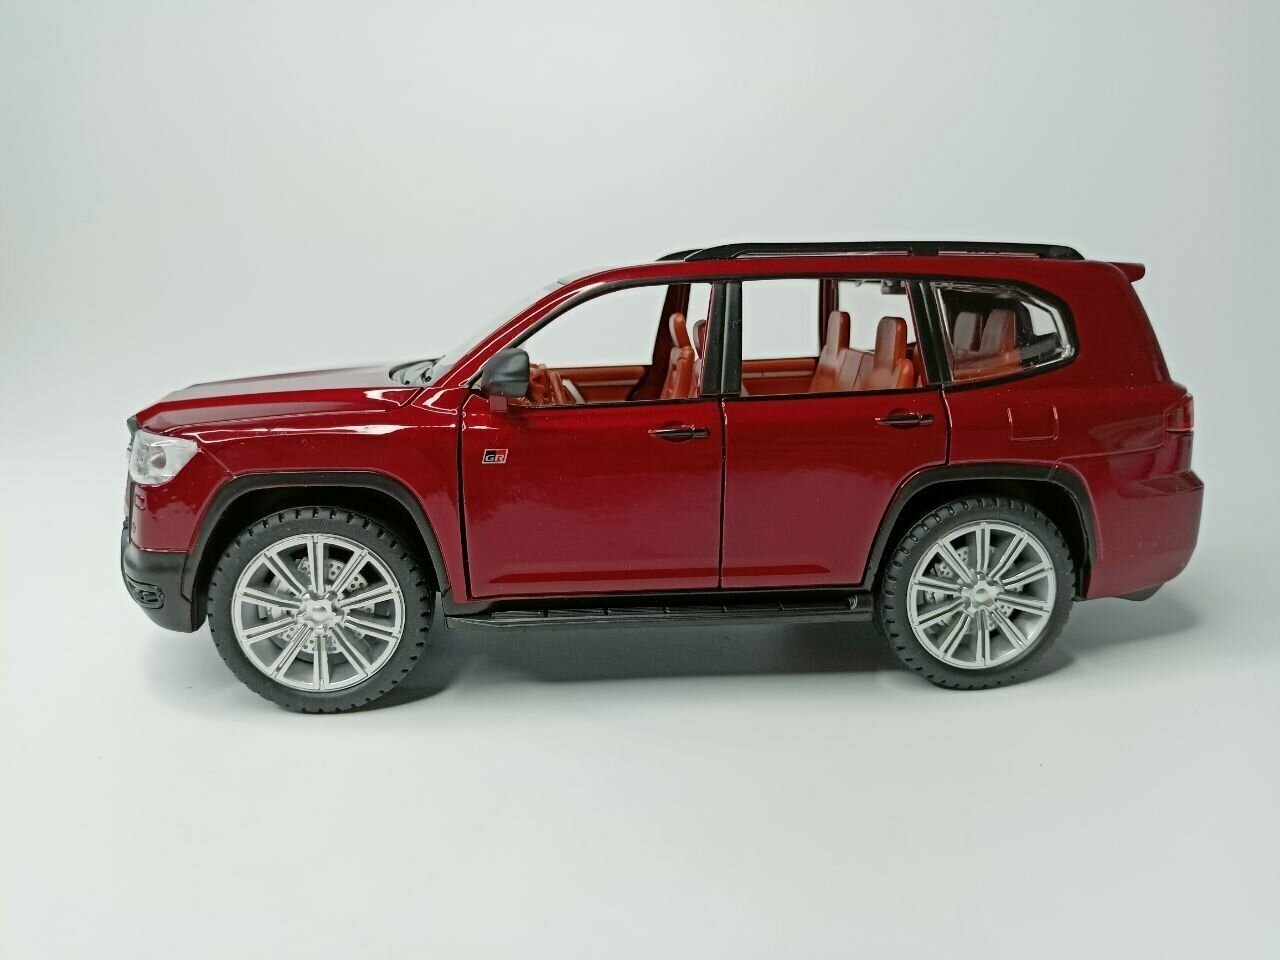 Модель автомобиля Toyota Land Cruiser коллекционная металлическая игрушка масштаб 1:24 красный